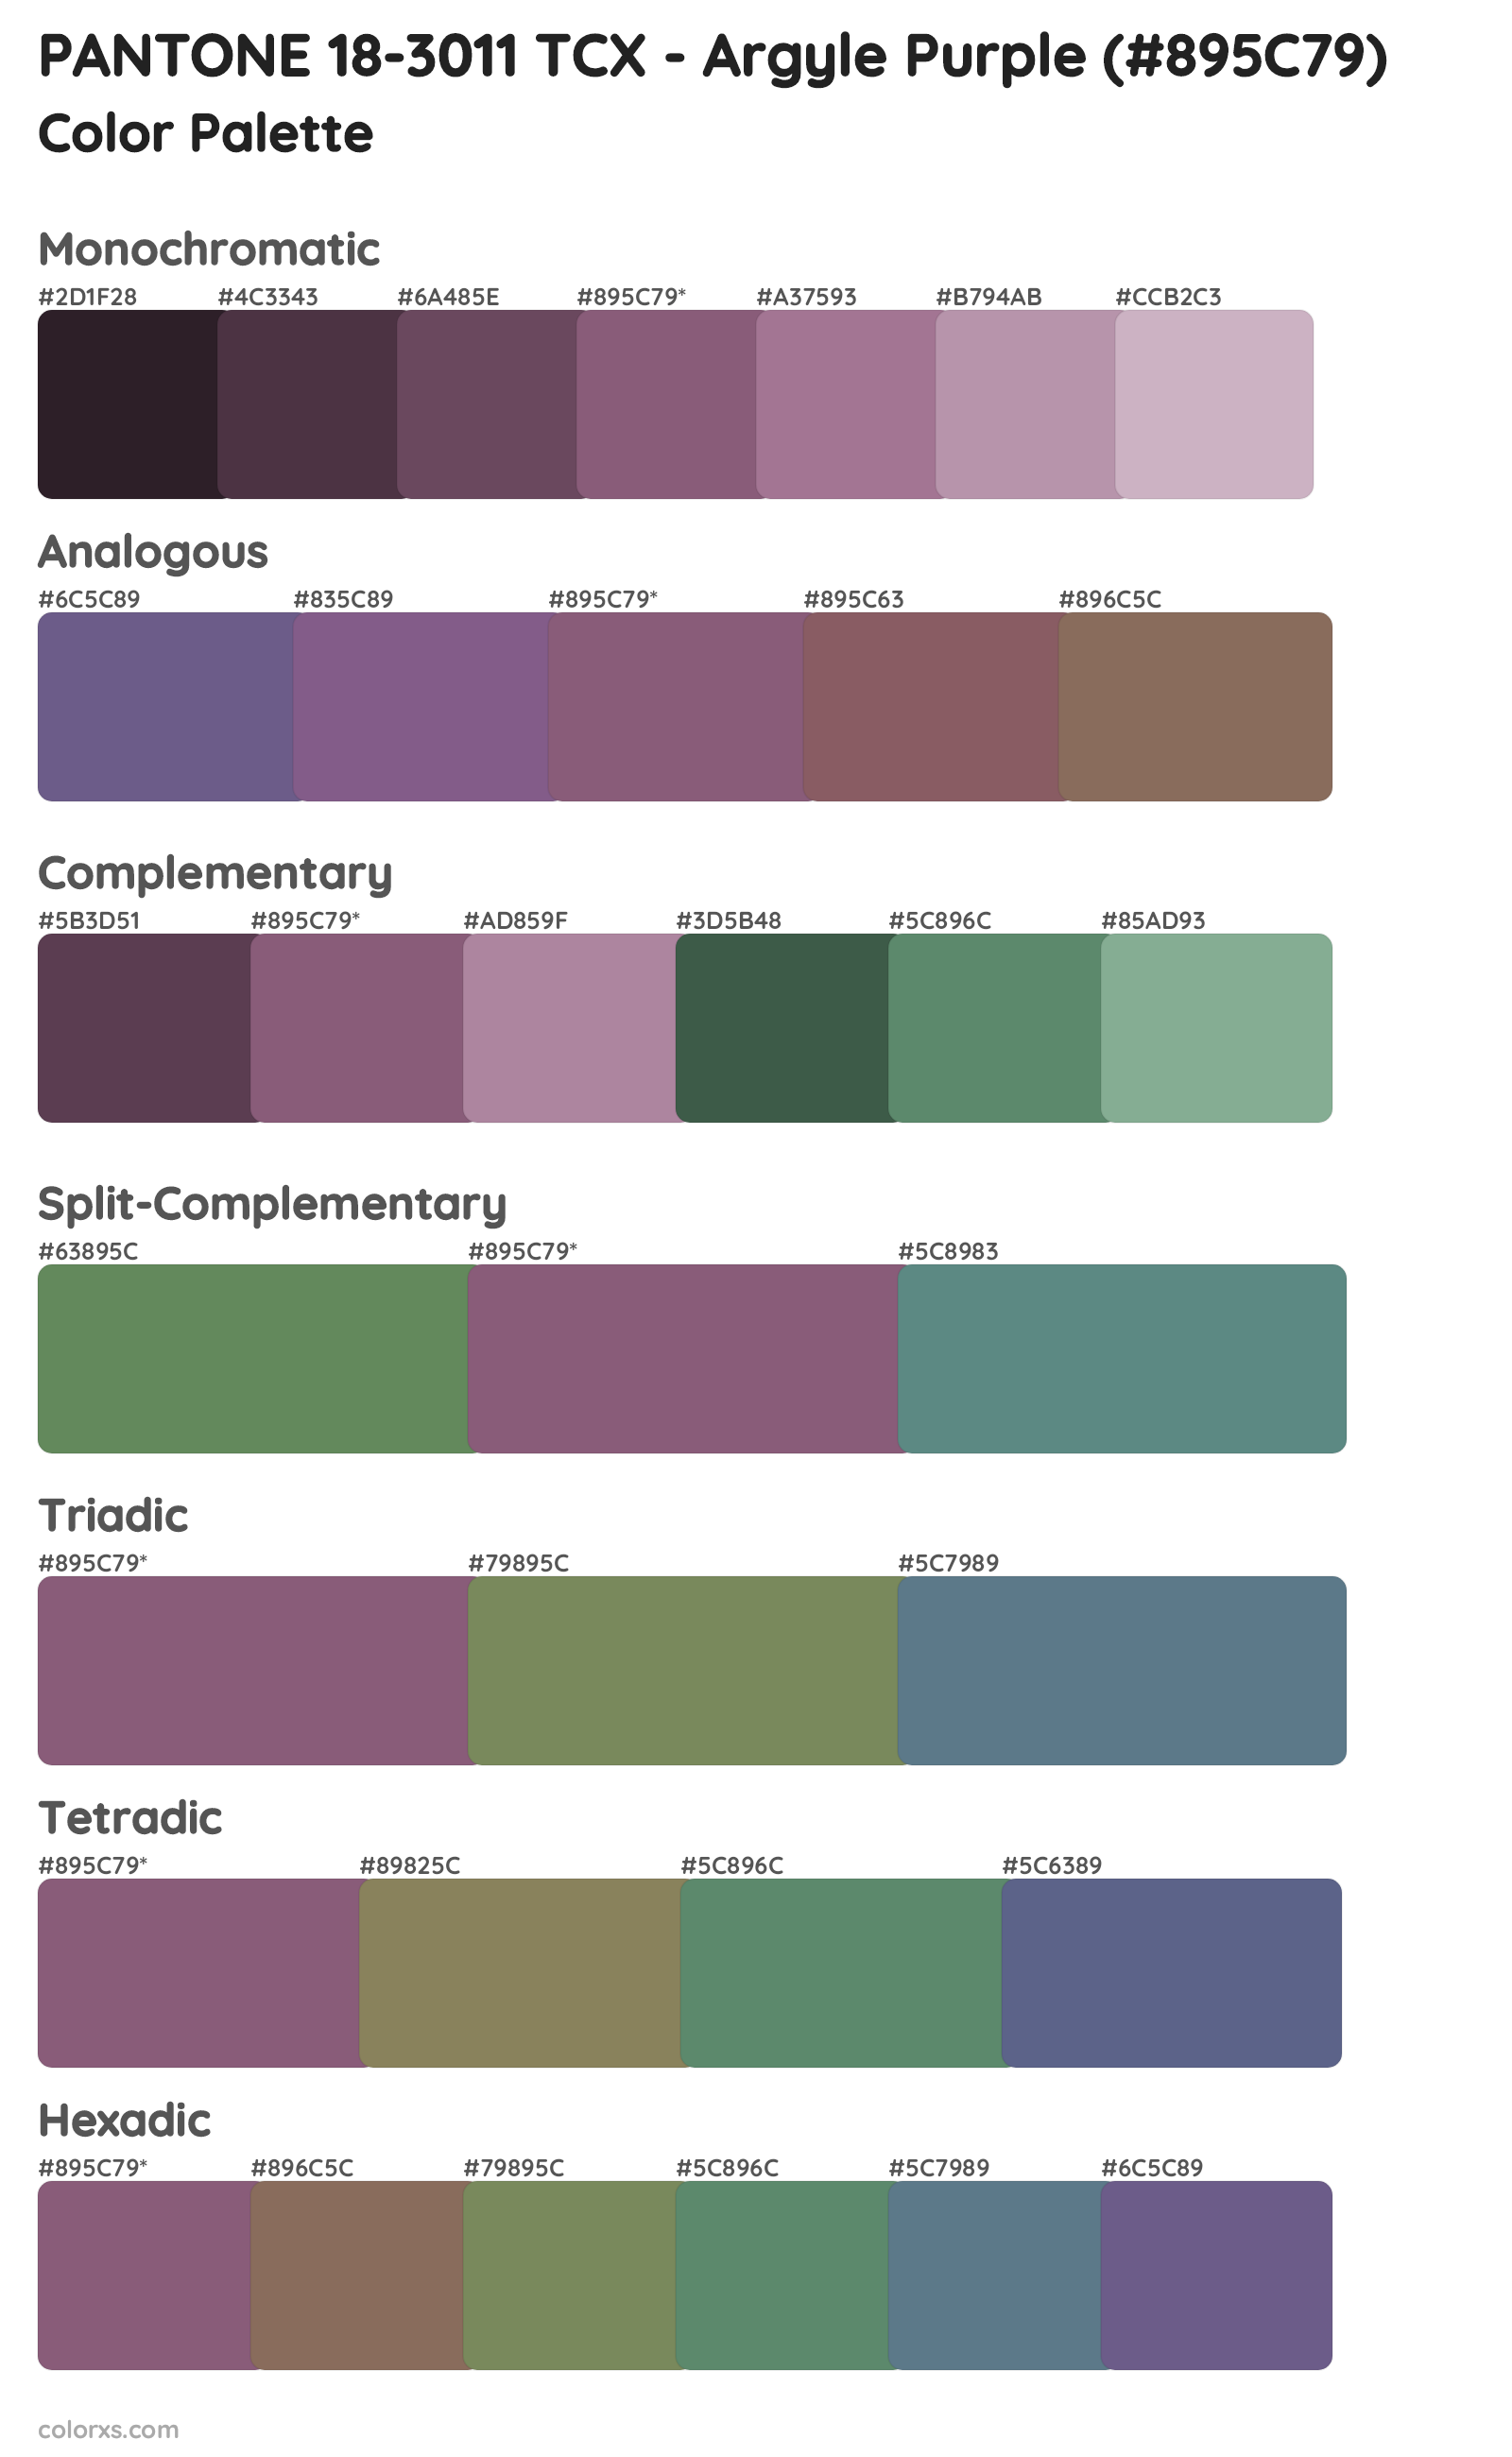 PANTONE 18-3011 TCX - Argyle Purple Color Scheme Palettes